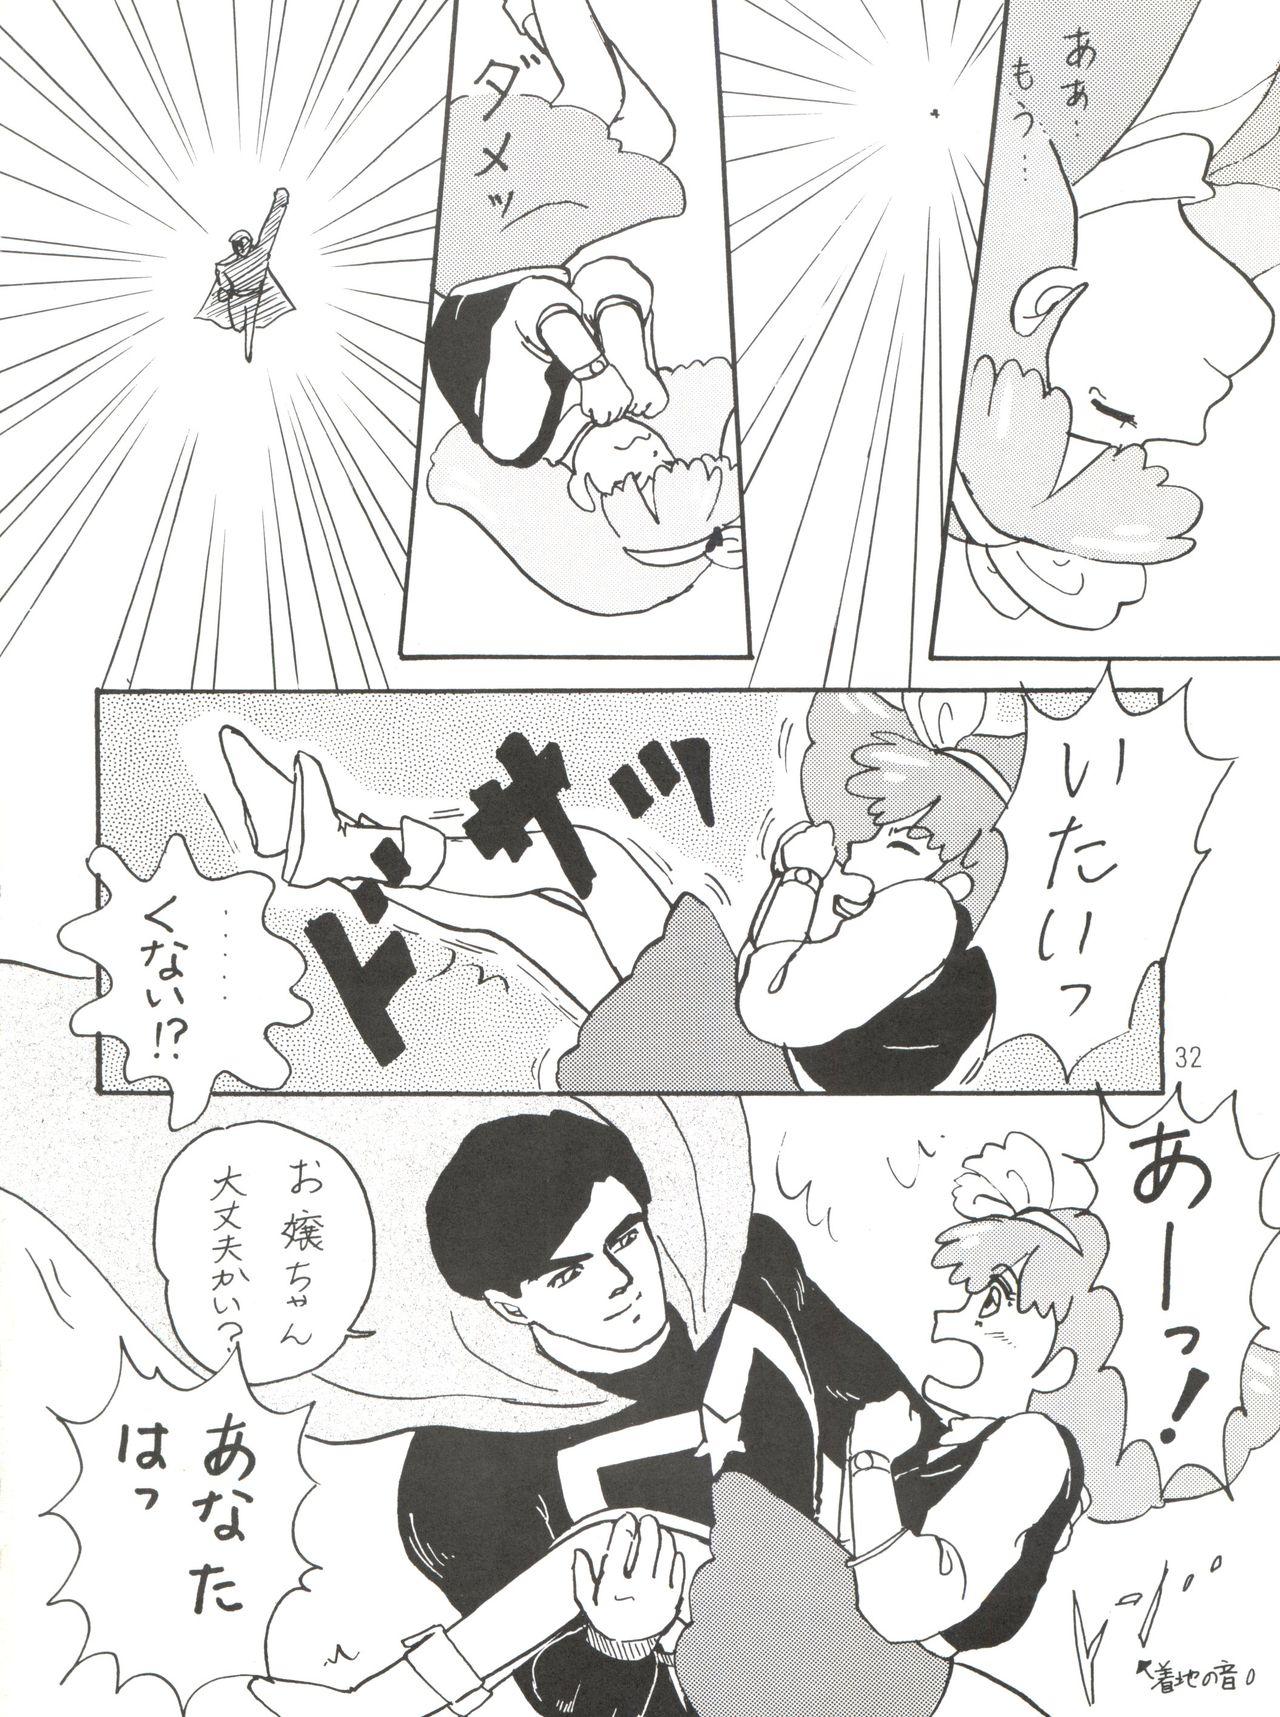 [紫電会 (お梅) MOMO POWER (Mahou no Princess Minky Momo) 31